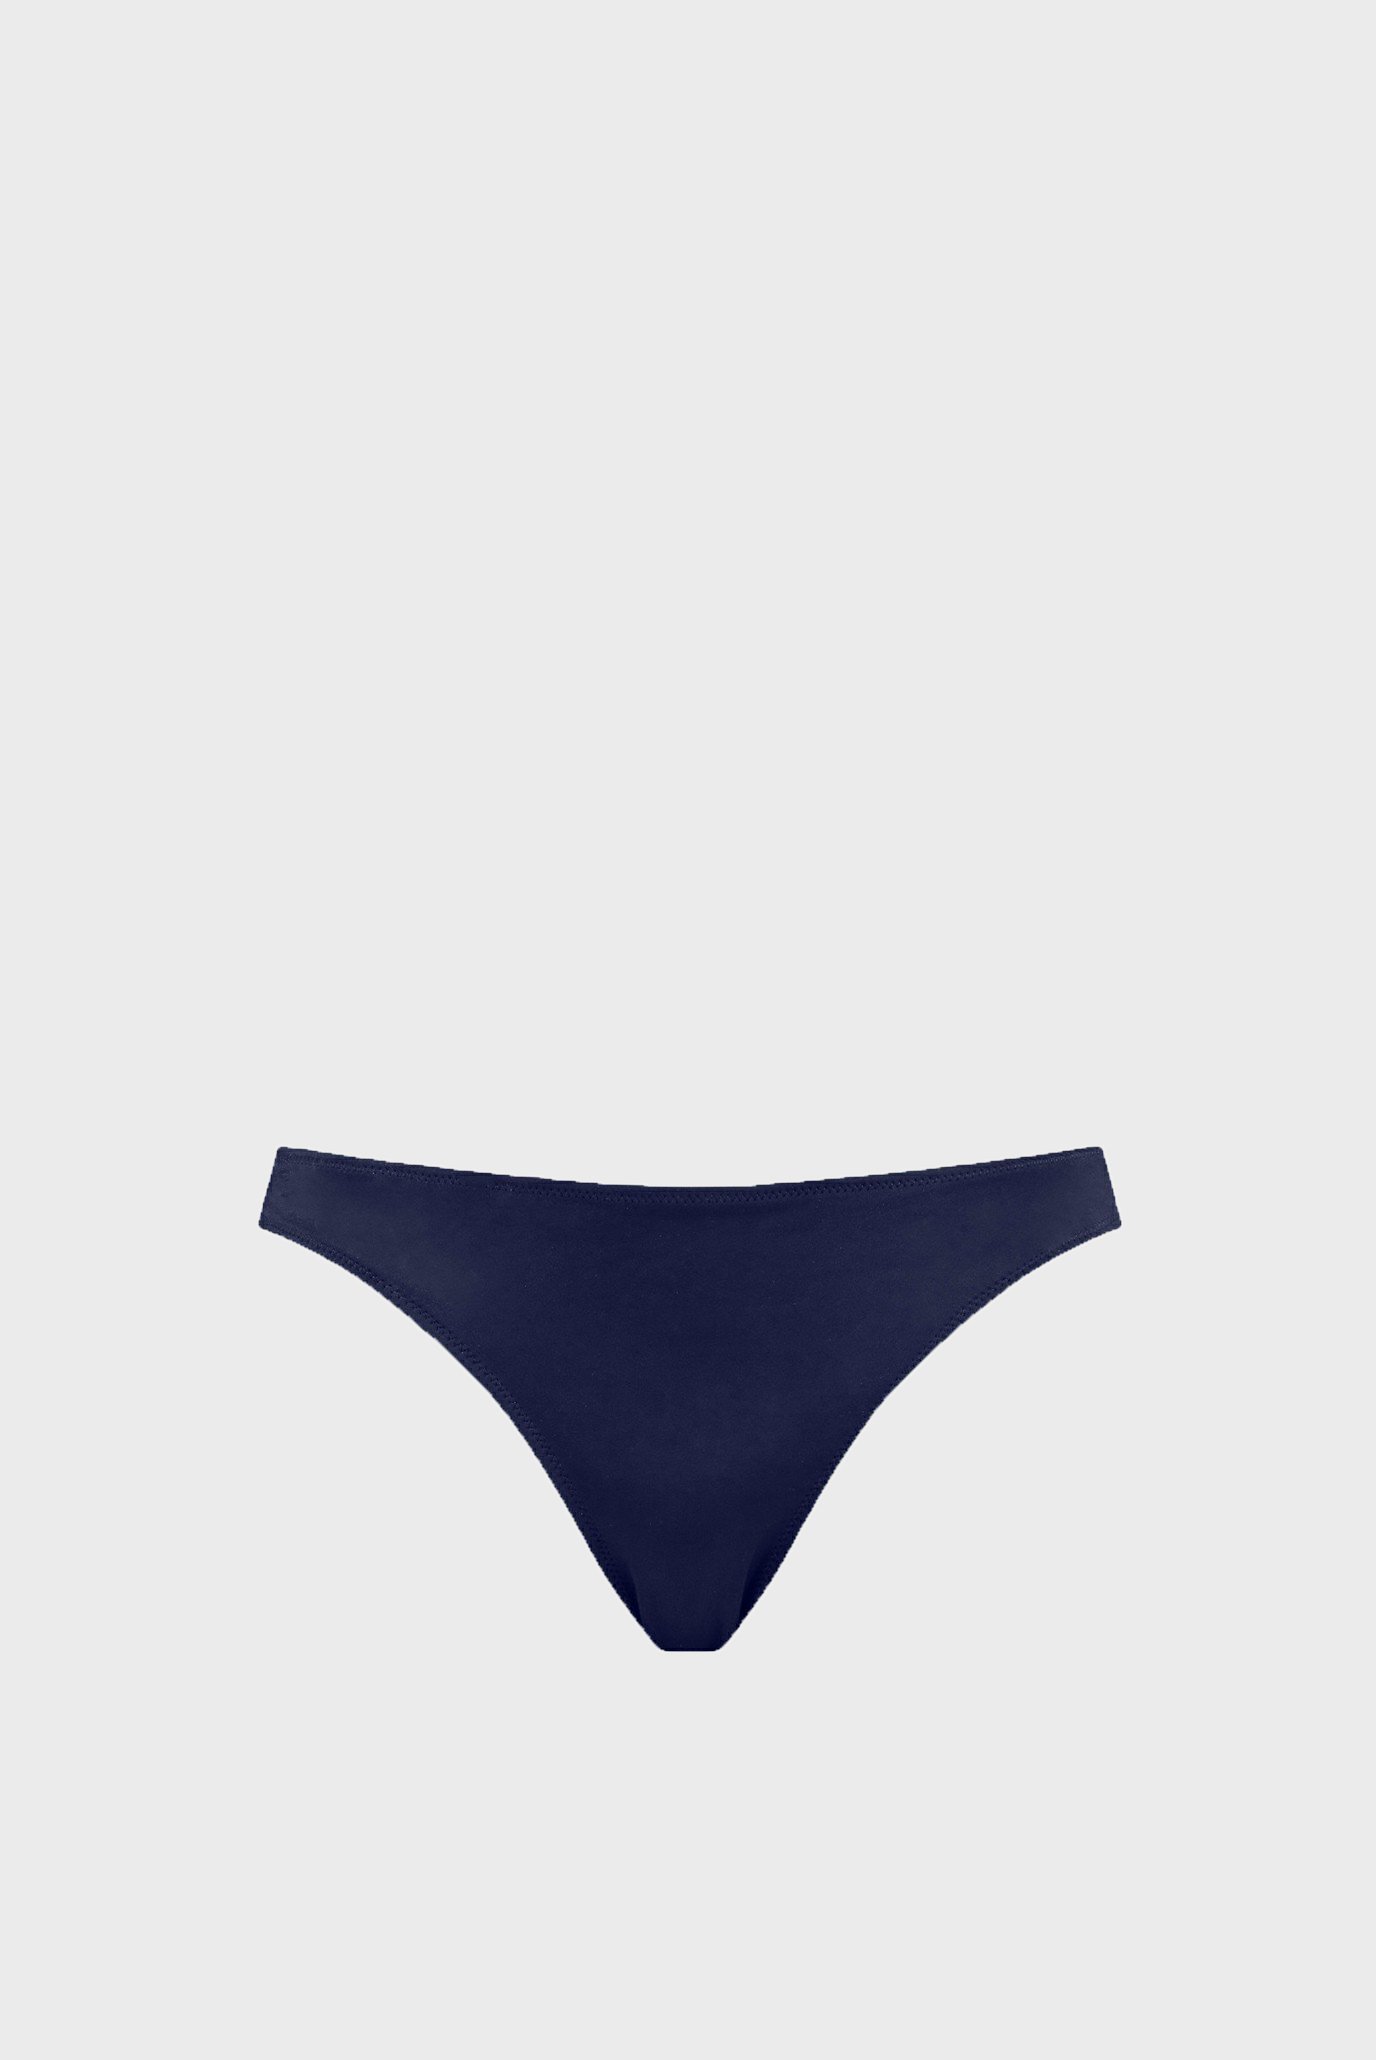 Женские темно-синие трусики от купальника  PUMA Swim Women Classic Bikini Bottom 1